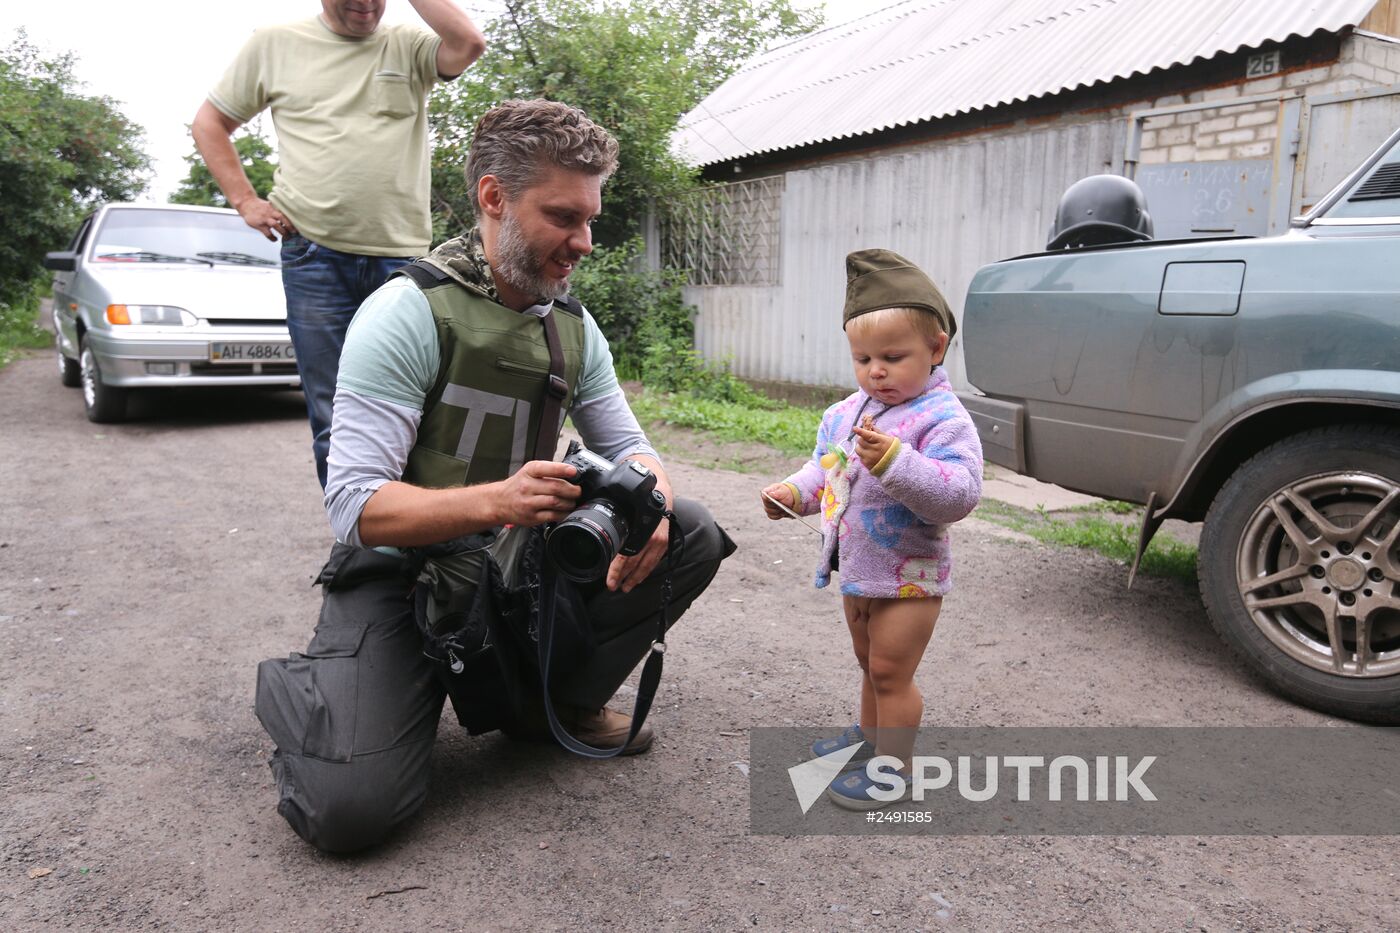 Rossiya Segodnya photo correspondent Andrei Stenin